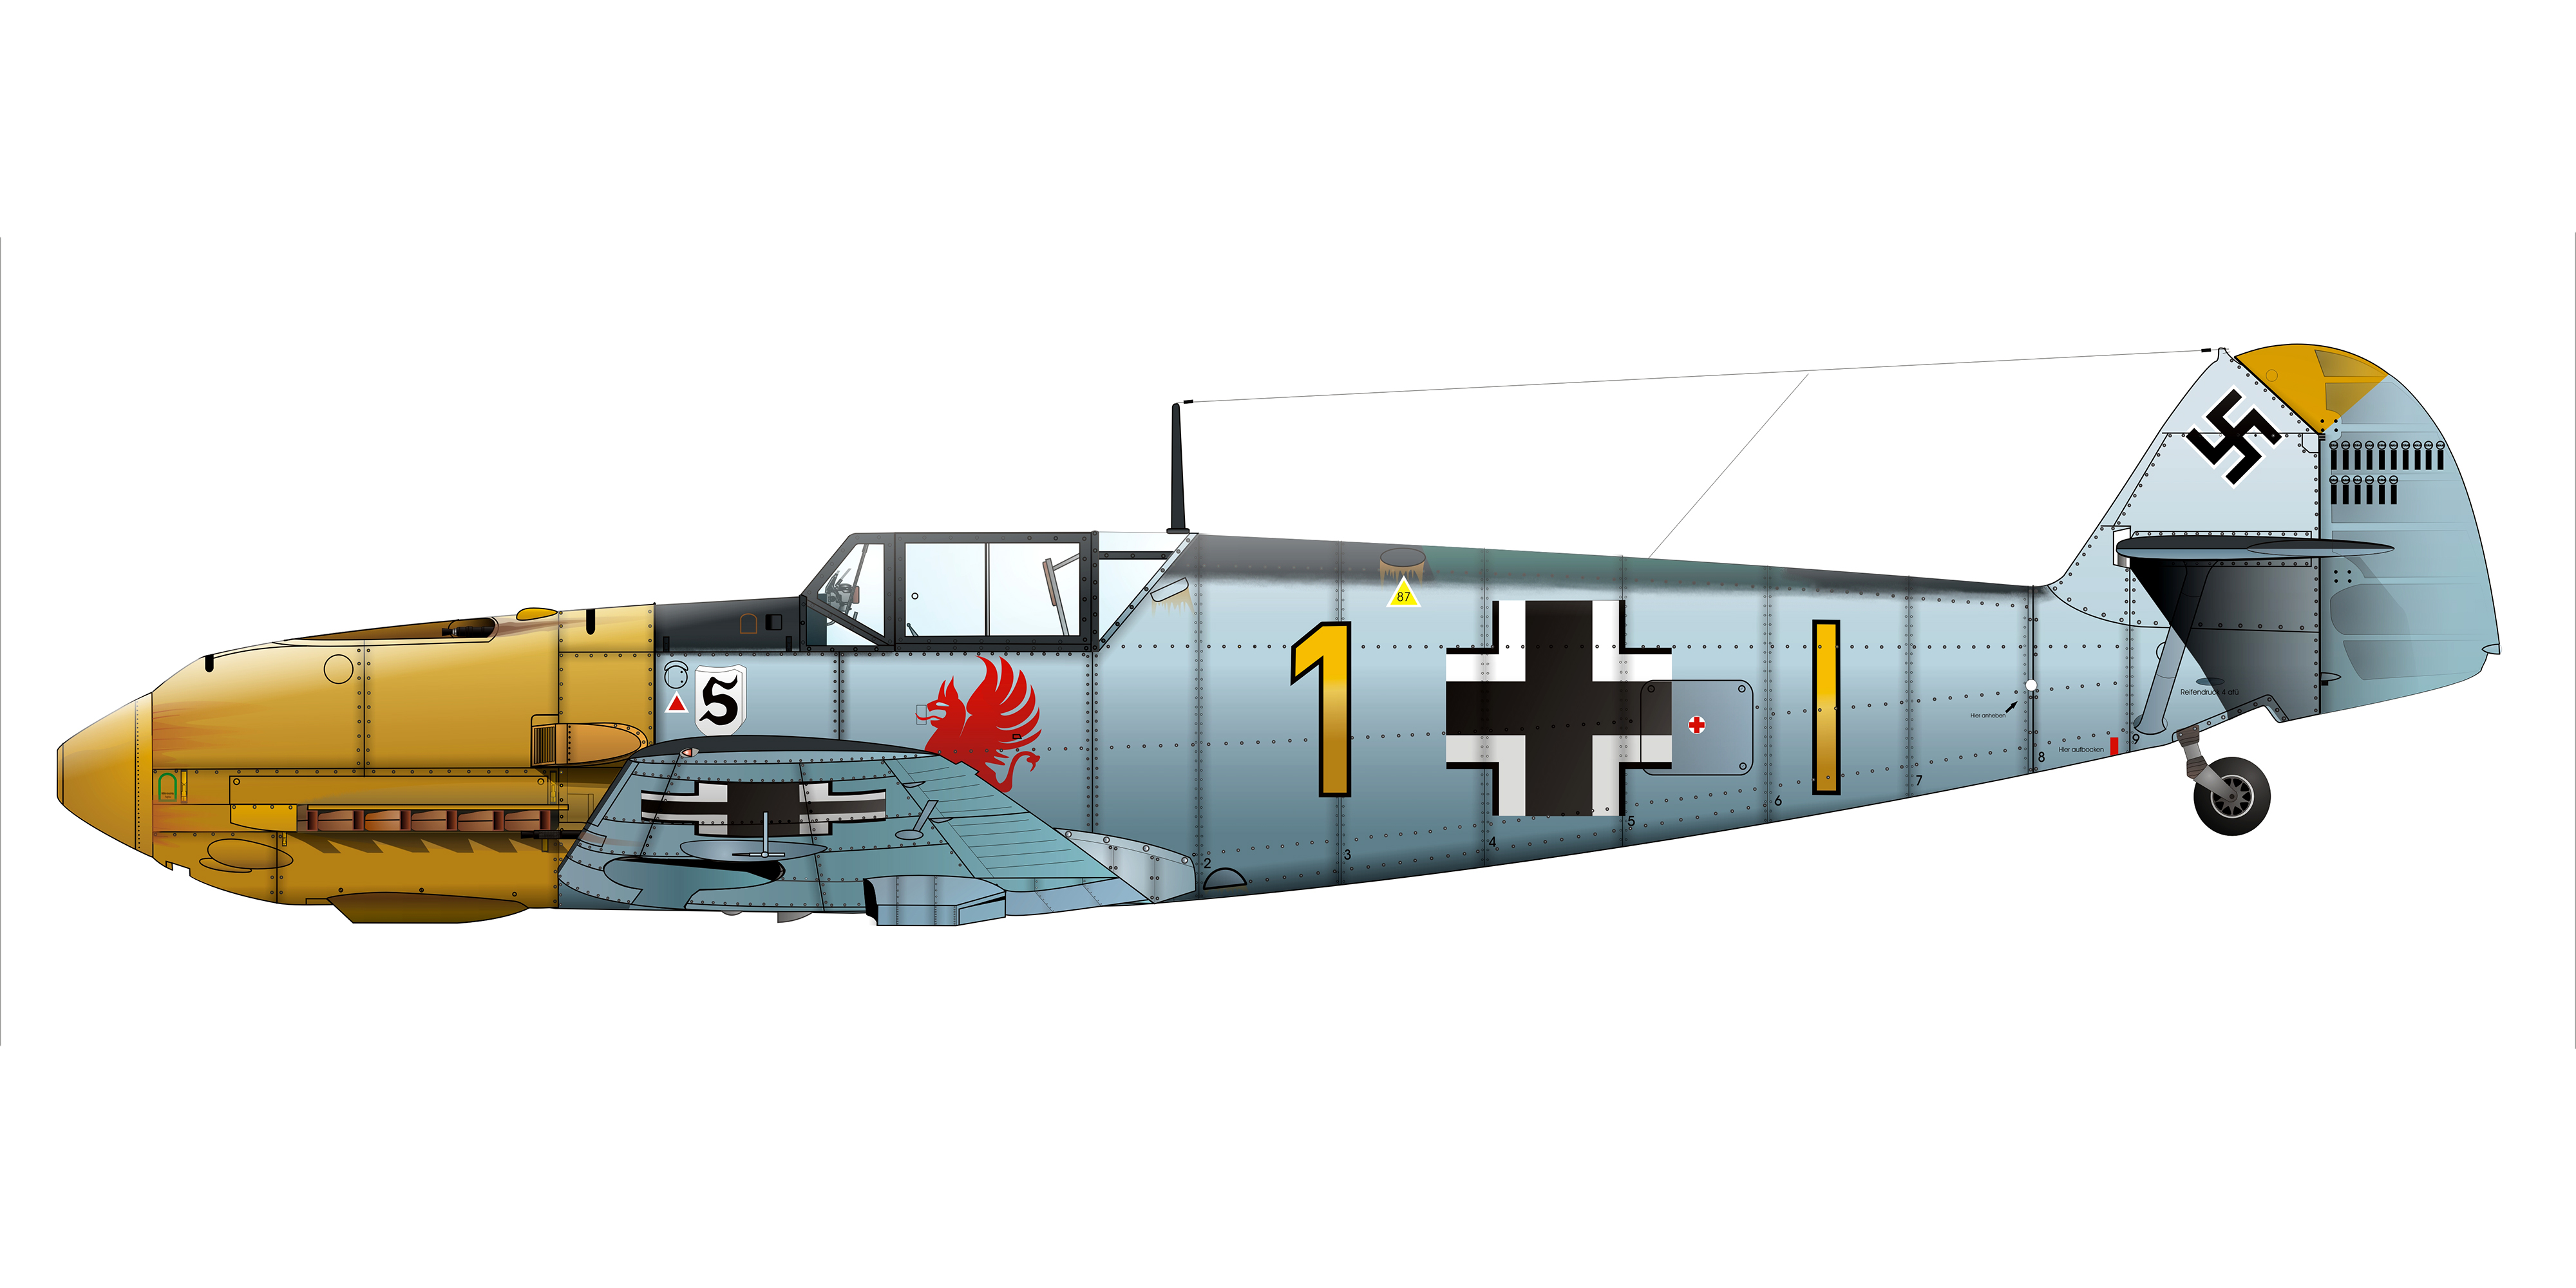 Messerschmitt Bf 109E4 9.JG26 Yellow 1 Gerhardt Schopfel Calais France Aug 1940 0A